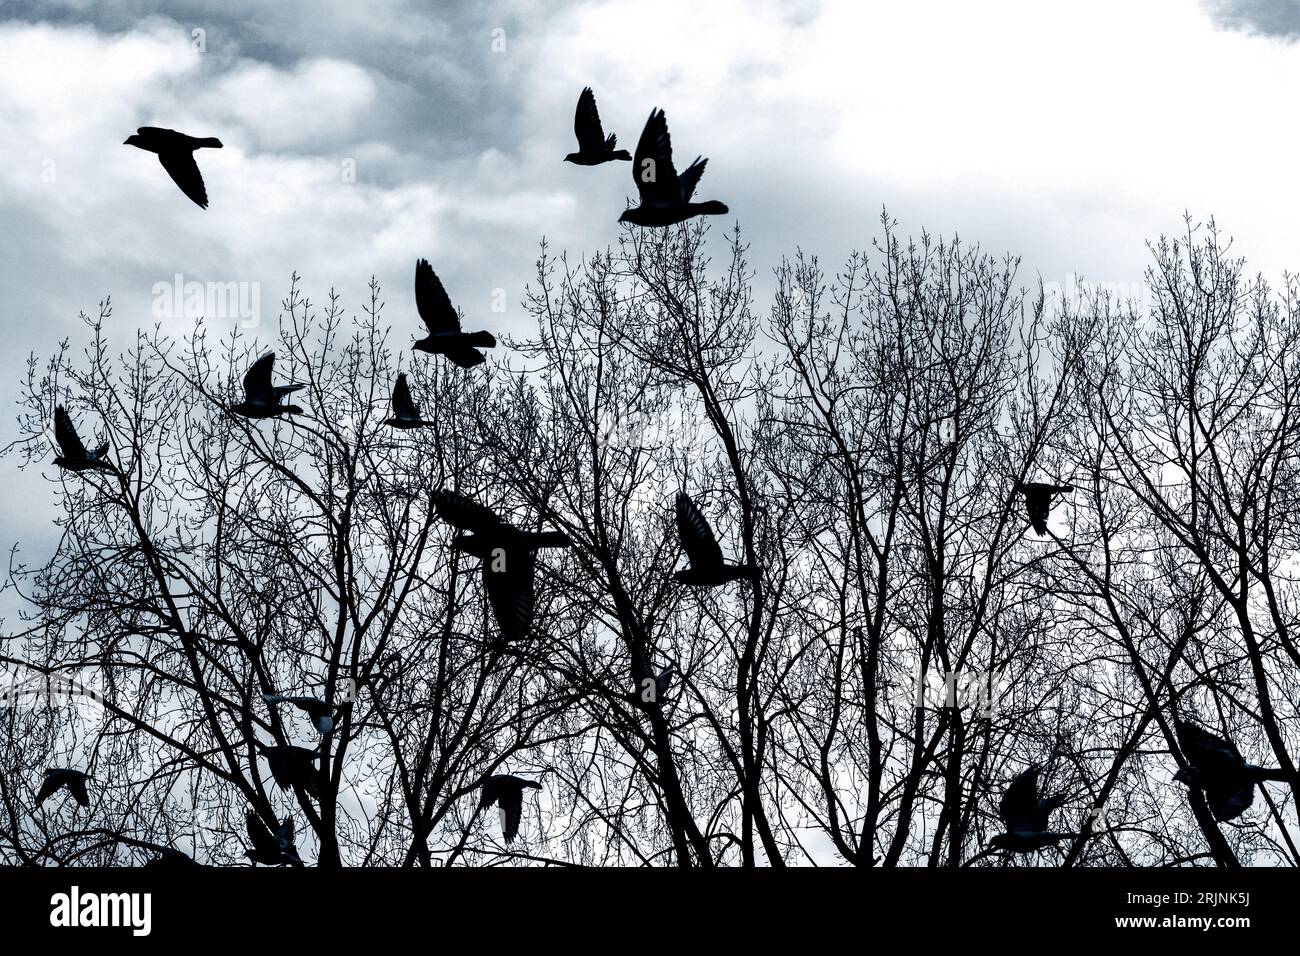 Die Silhouette der Vögel, die im Winter über blattlose Bäume fliegen. Stockfoto